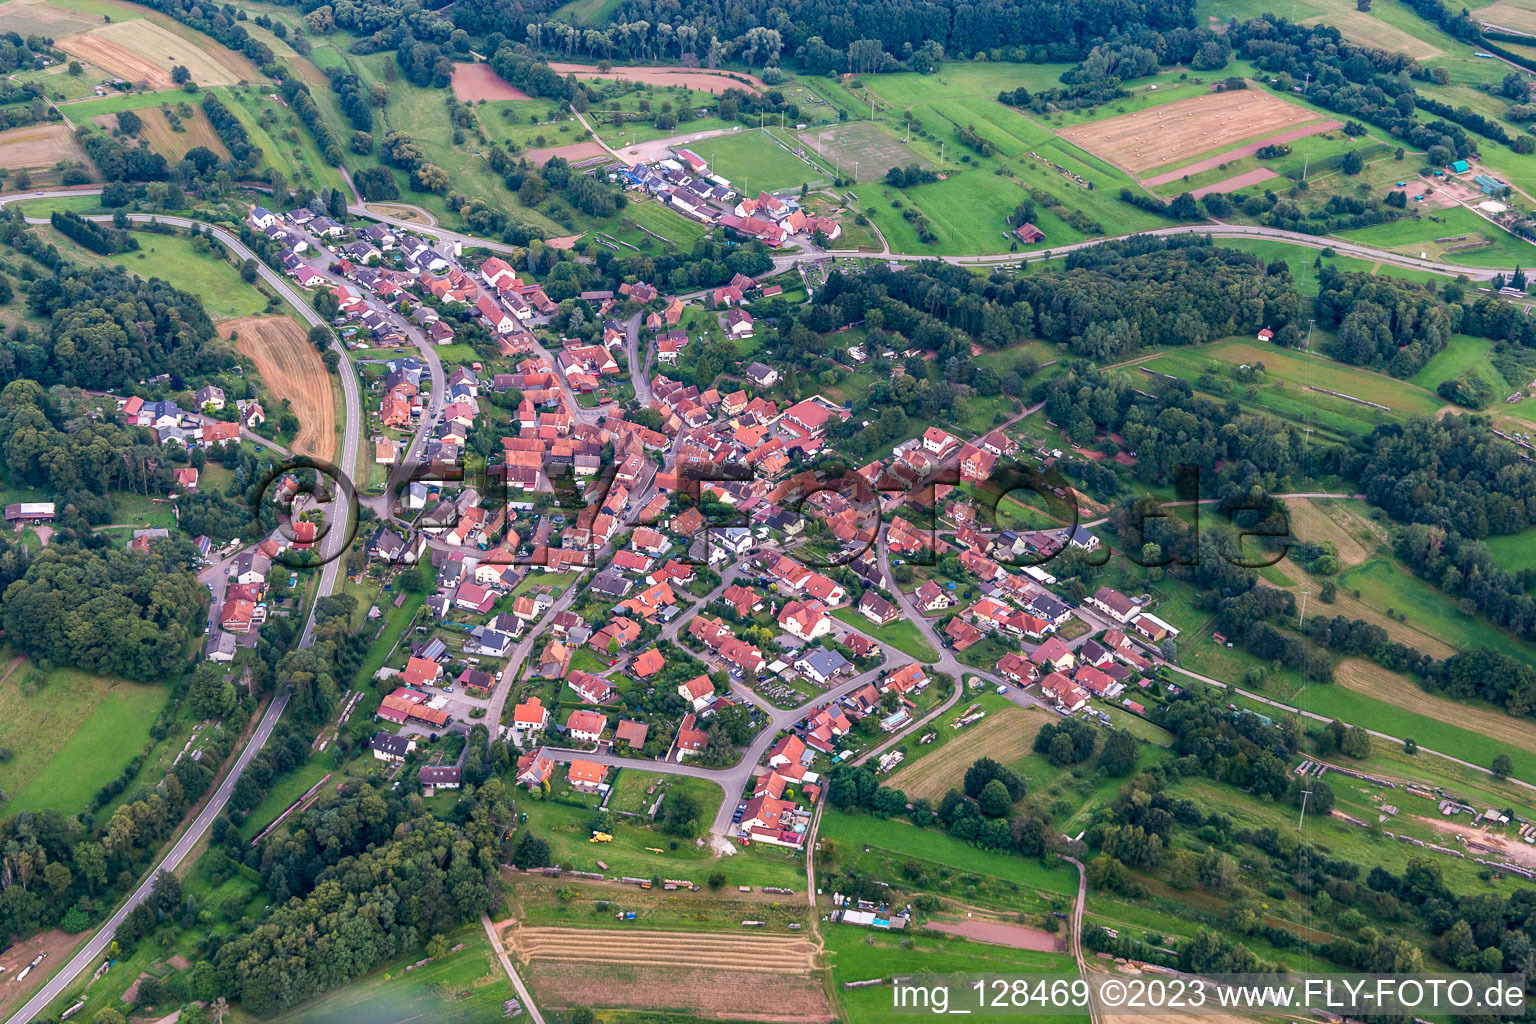 Völkersweiler dans le département Rhénanie-Palatinat, Allemagne hors des airs